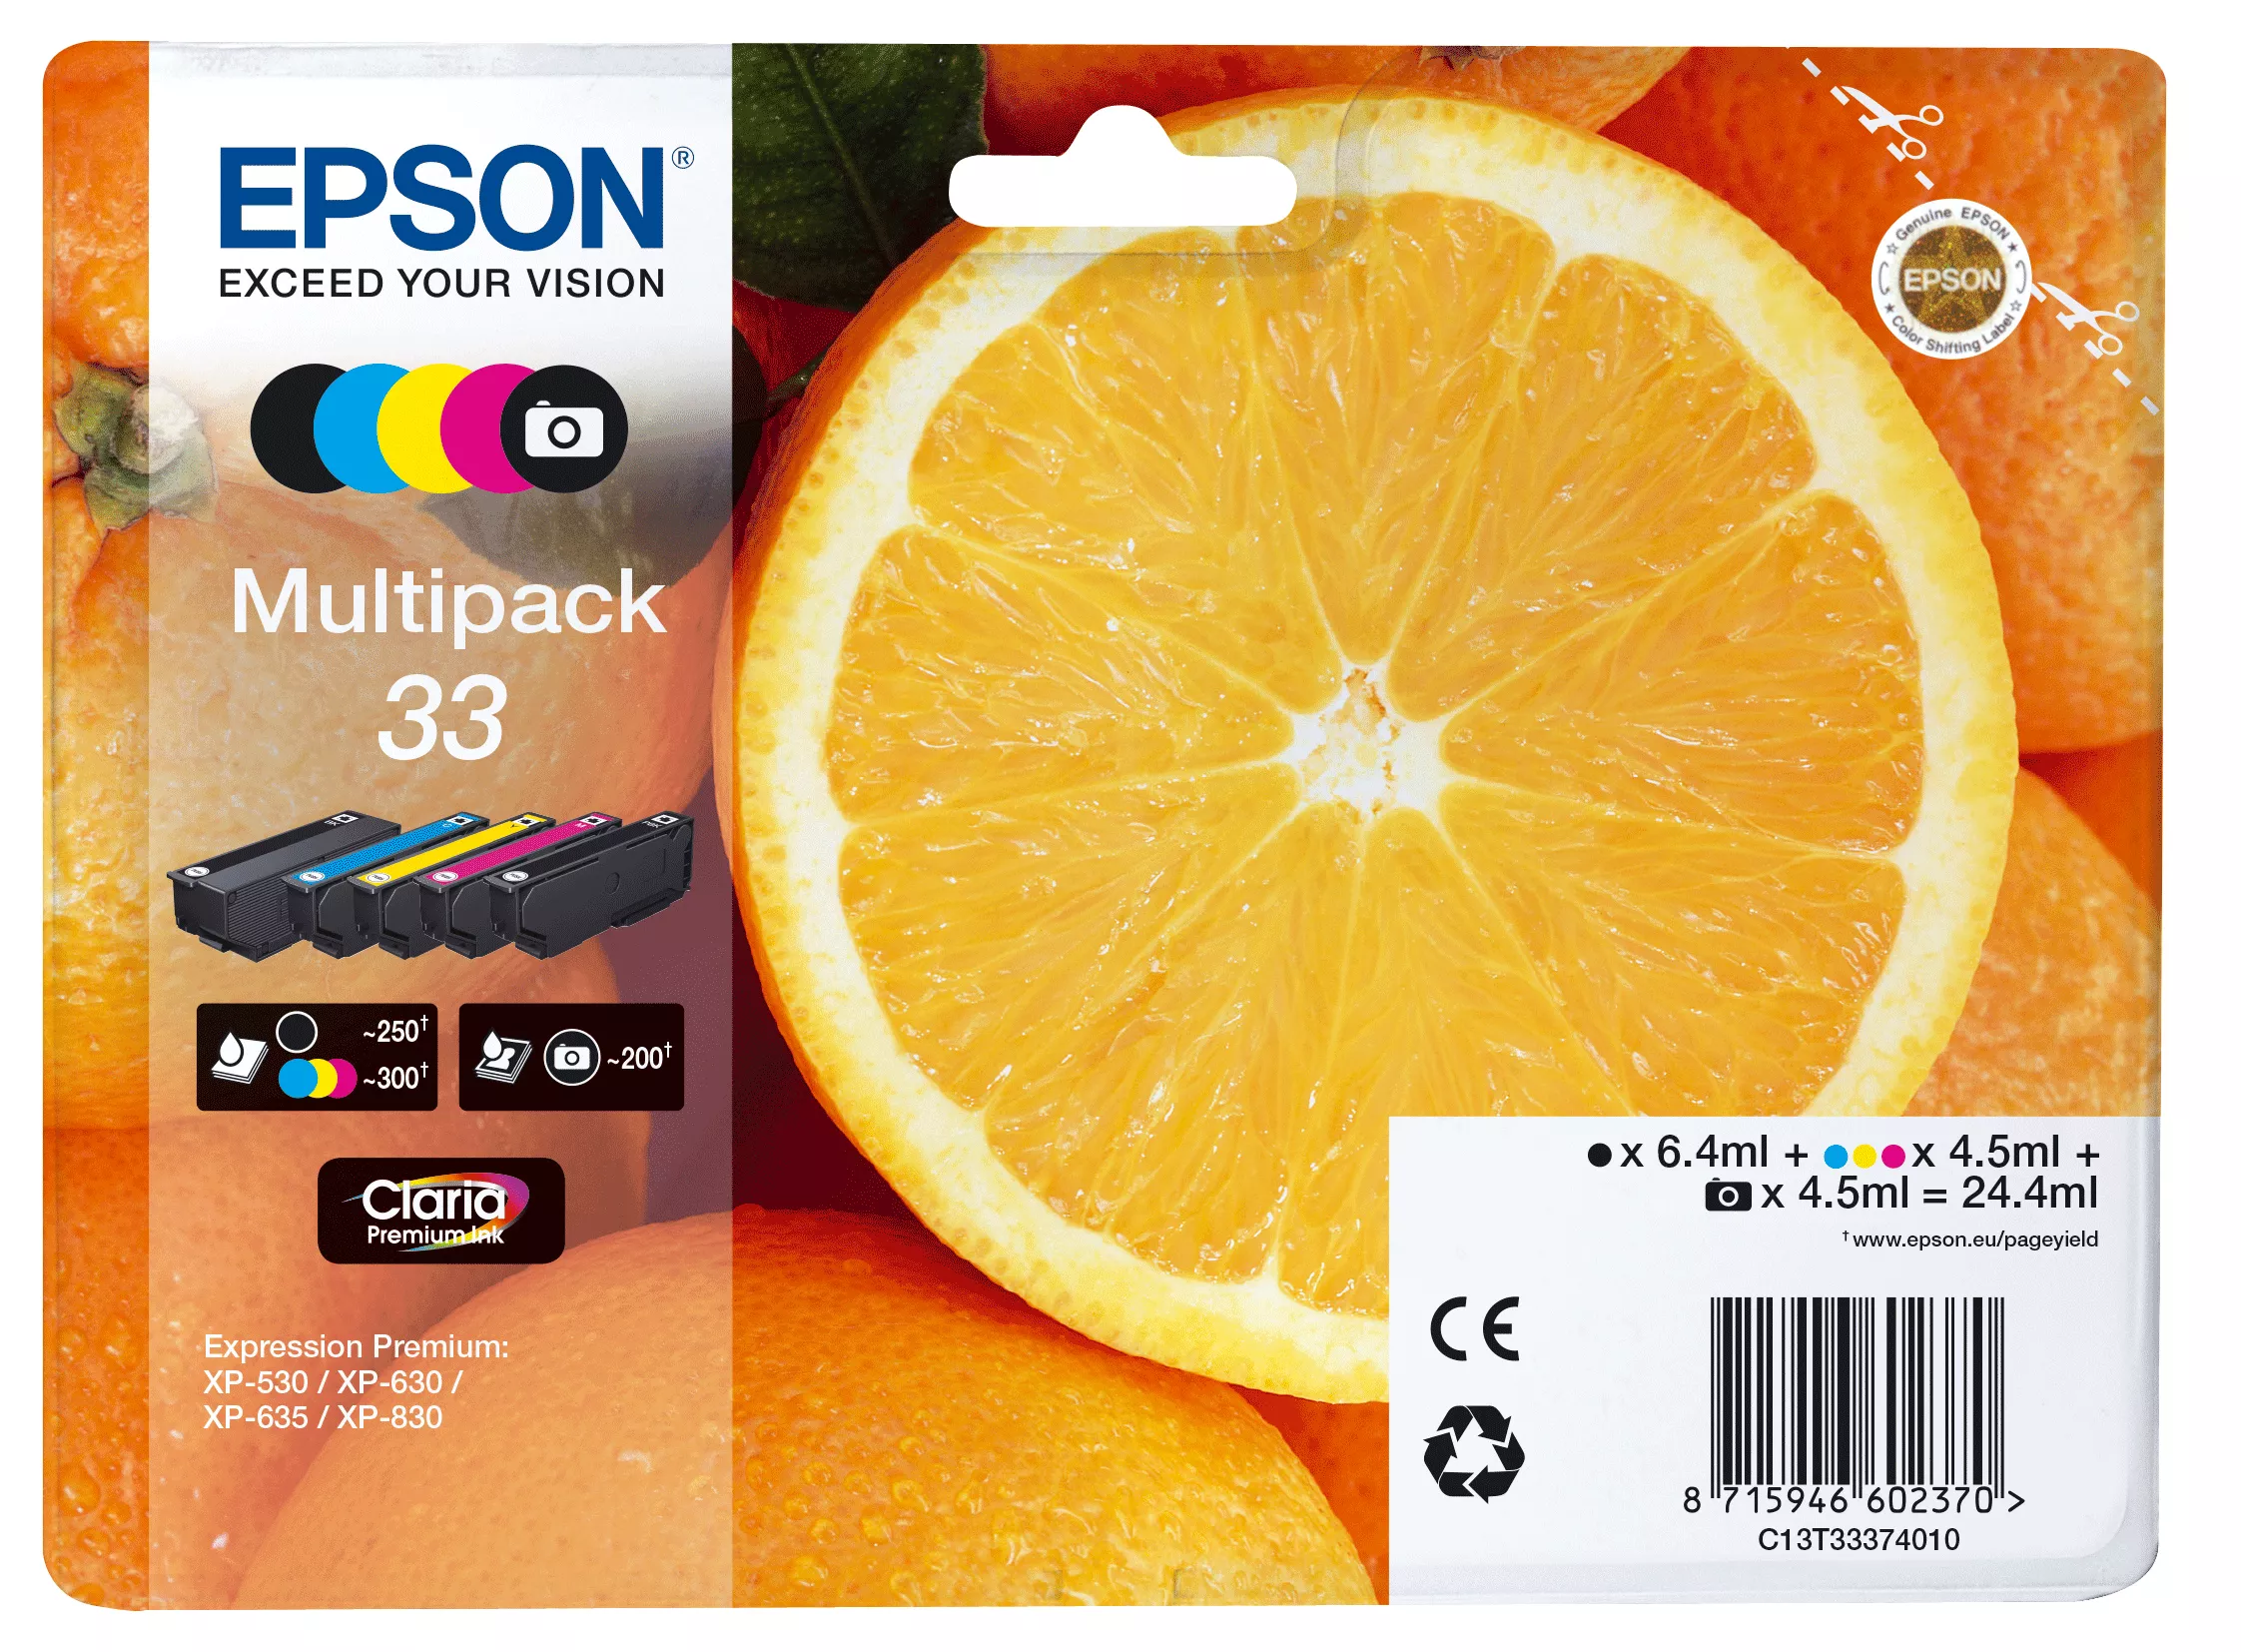 Achat EPSON Multipack Oranges alarmé - Encre Claria Premium sur hello RSE